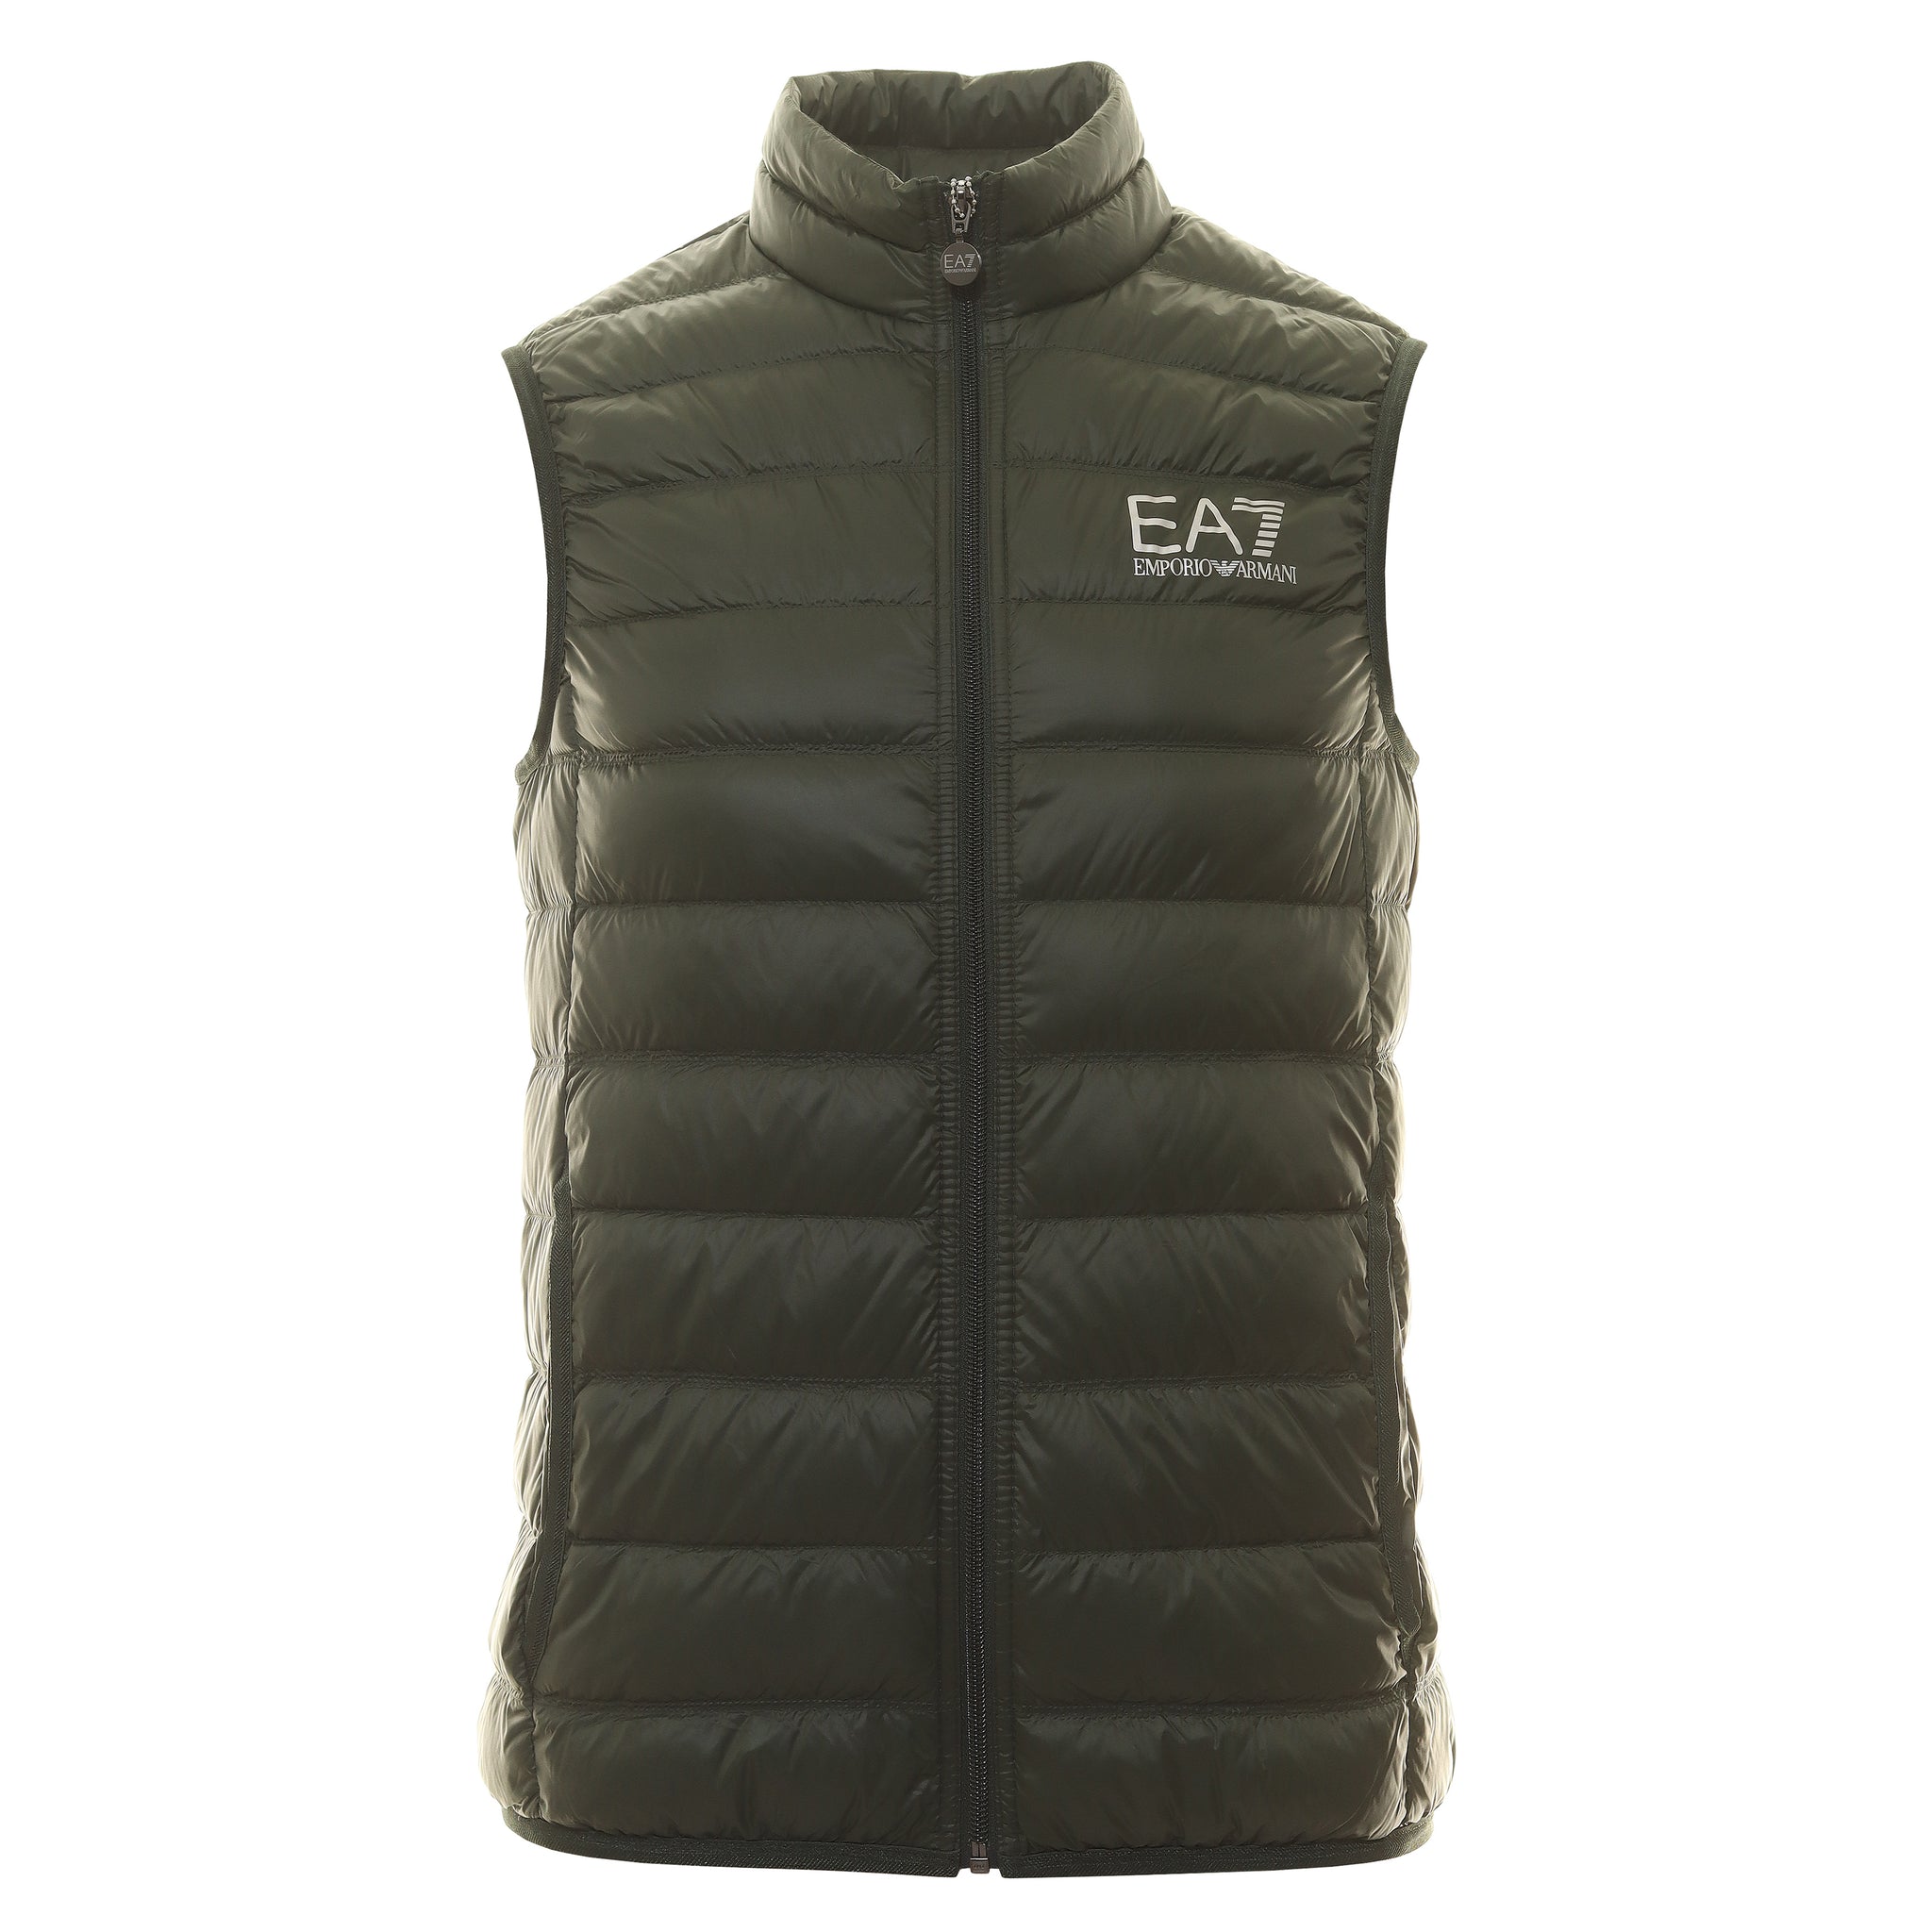 EA7 Emporio Armani Active mens standard Train Core Id Down Light Vest :  Emporio Armani: : Clothing, Shoes & Accessories